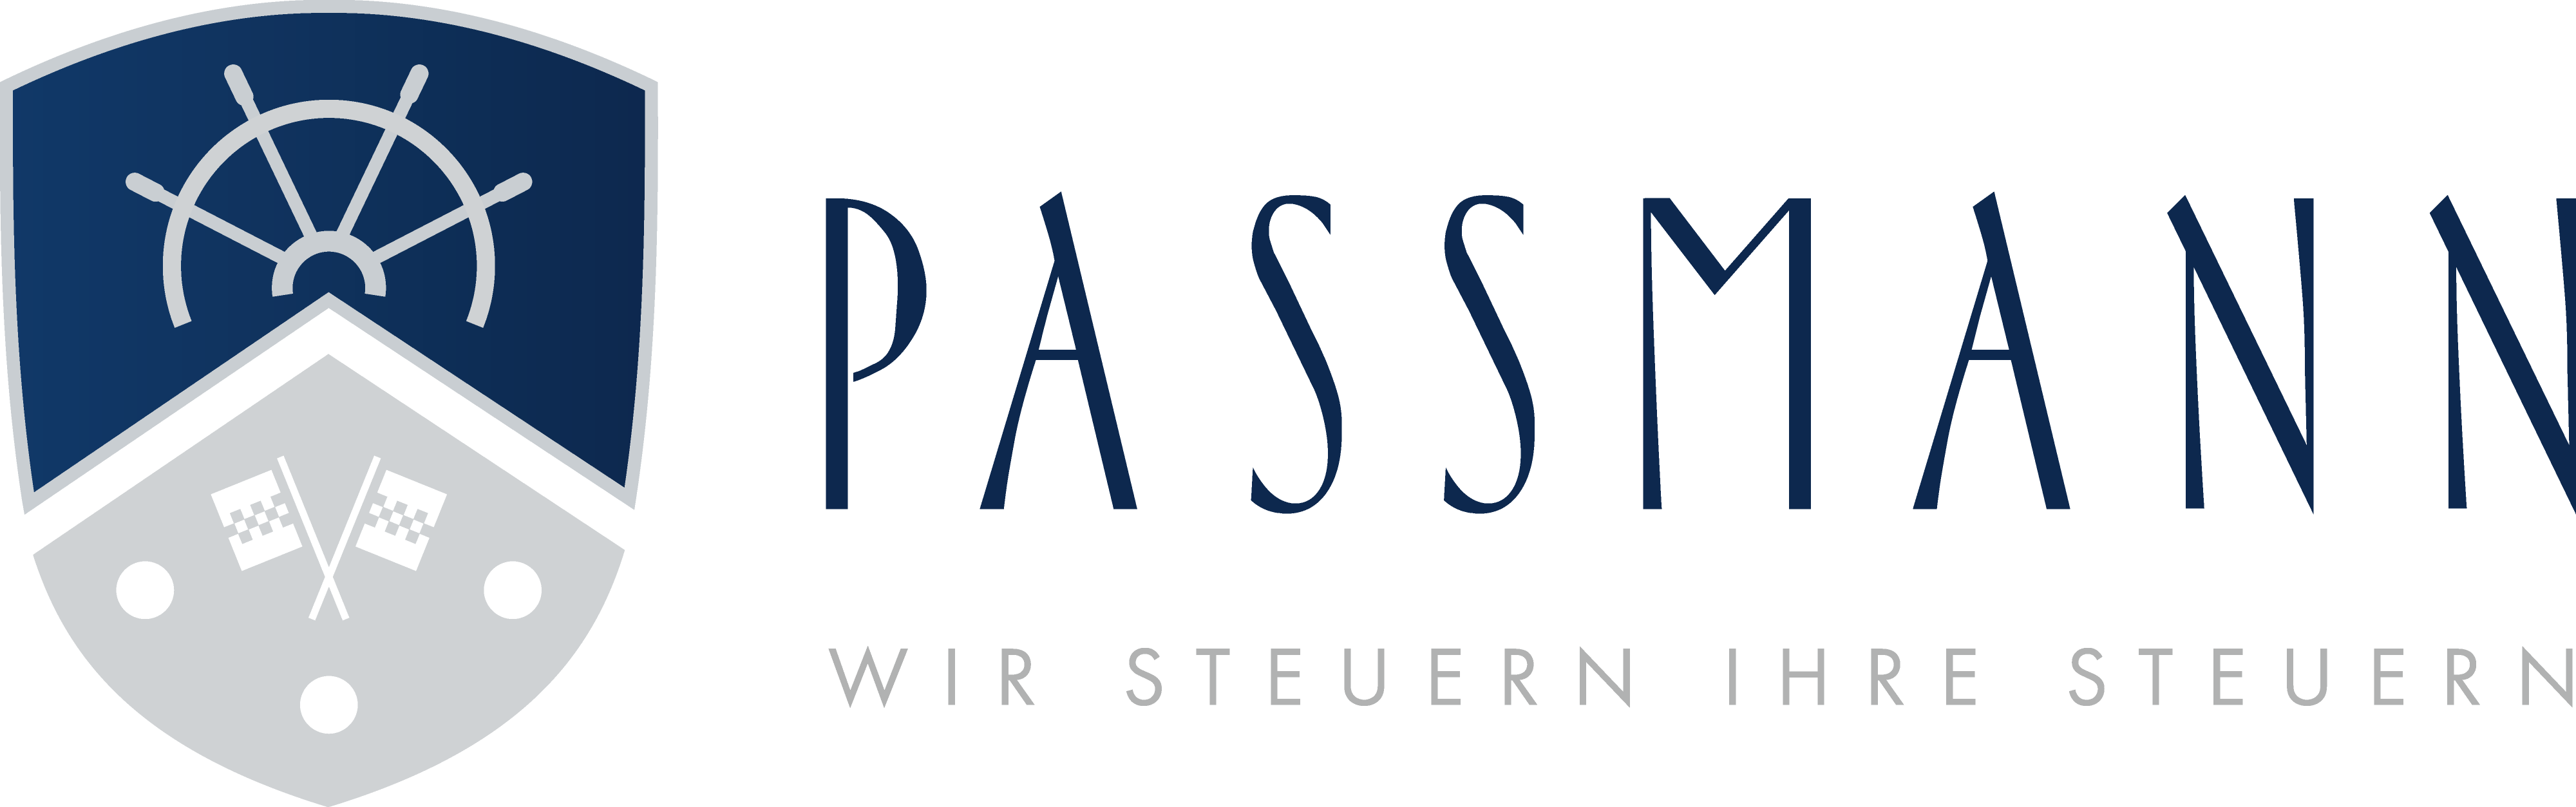 passmann-partner